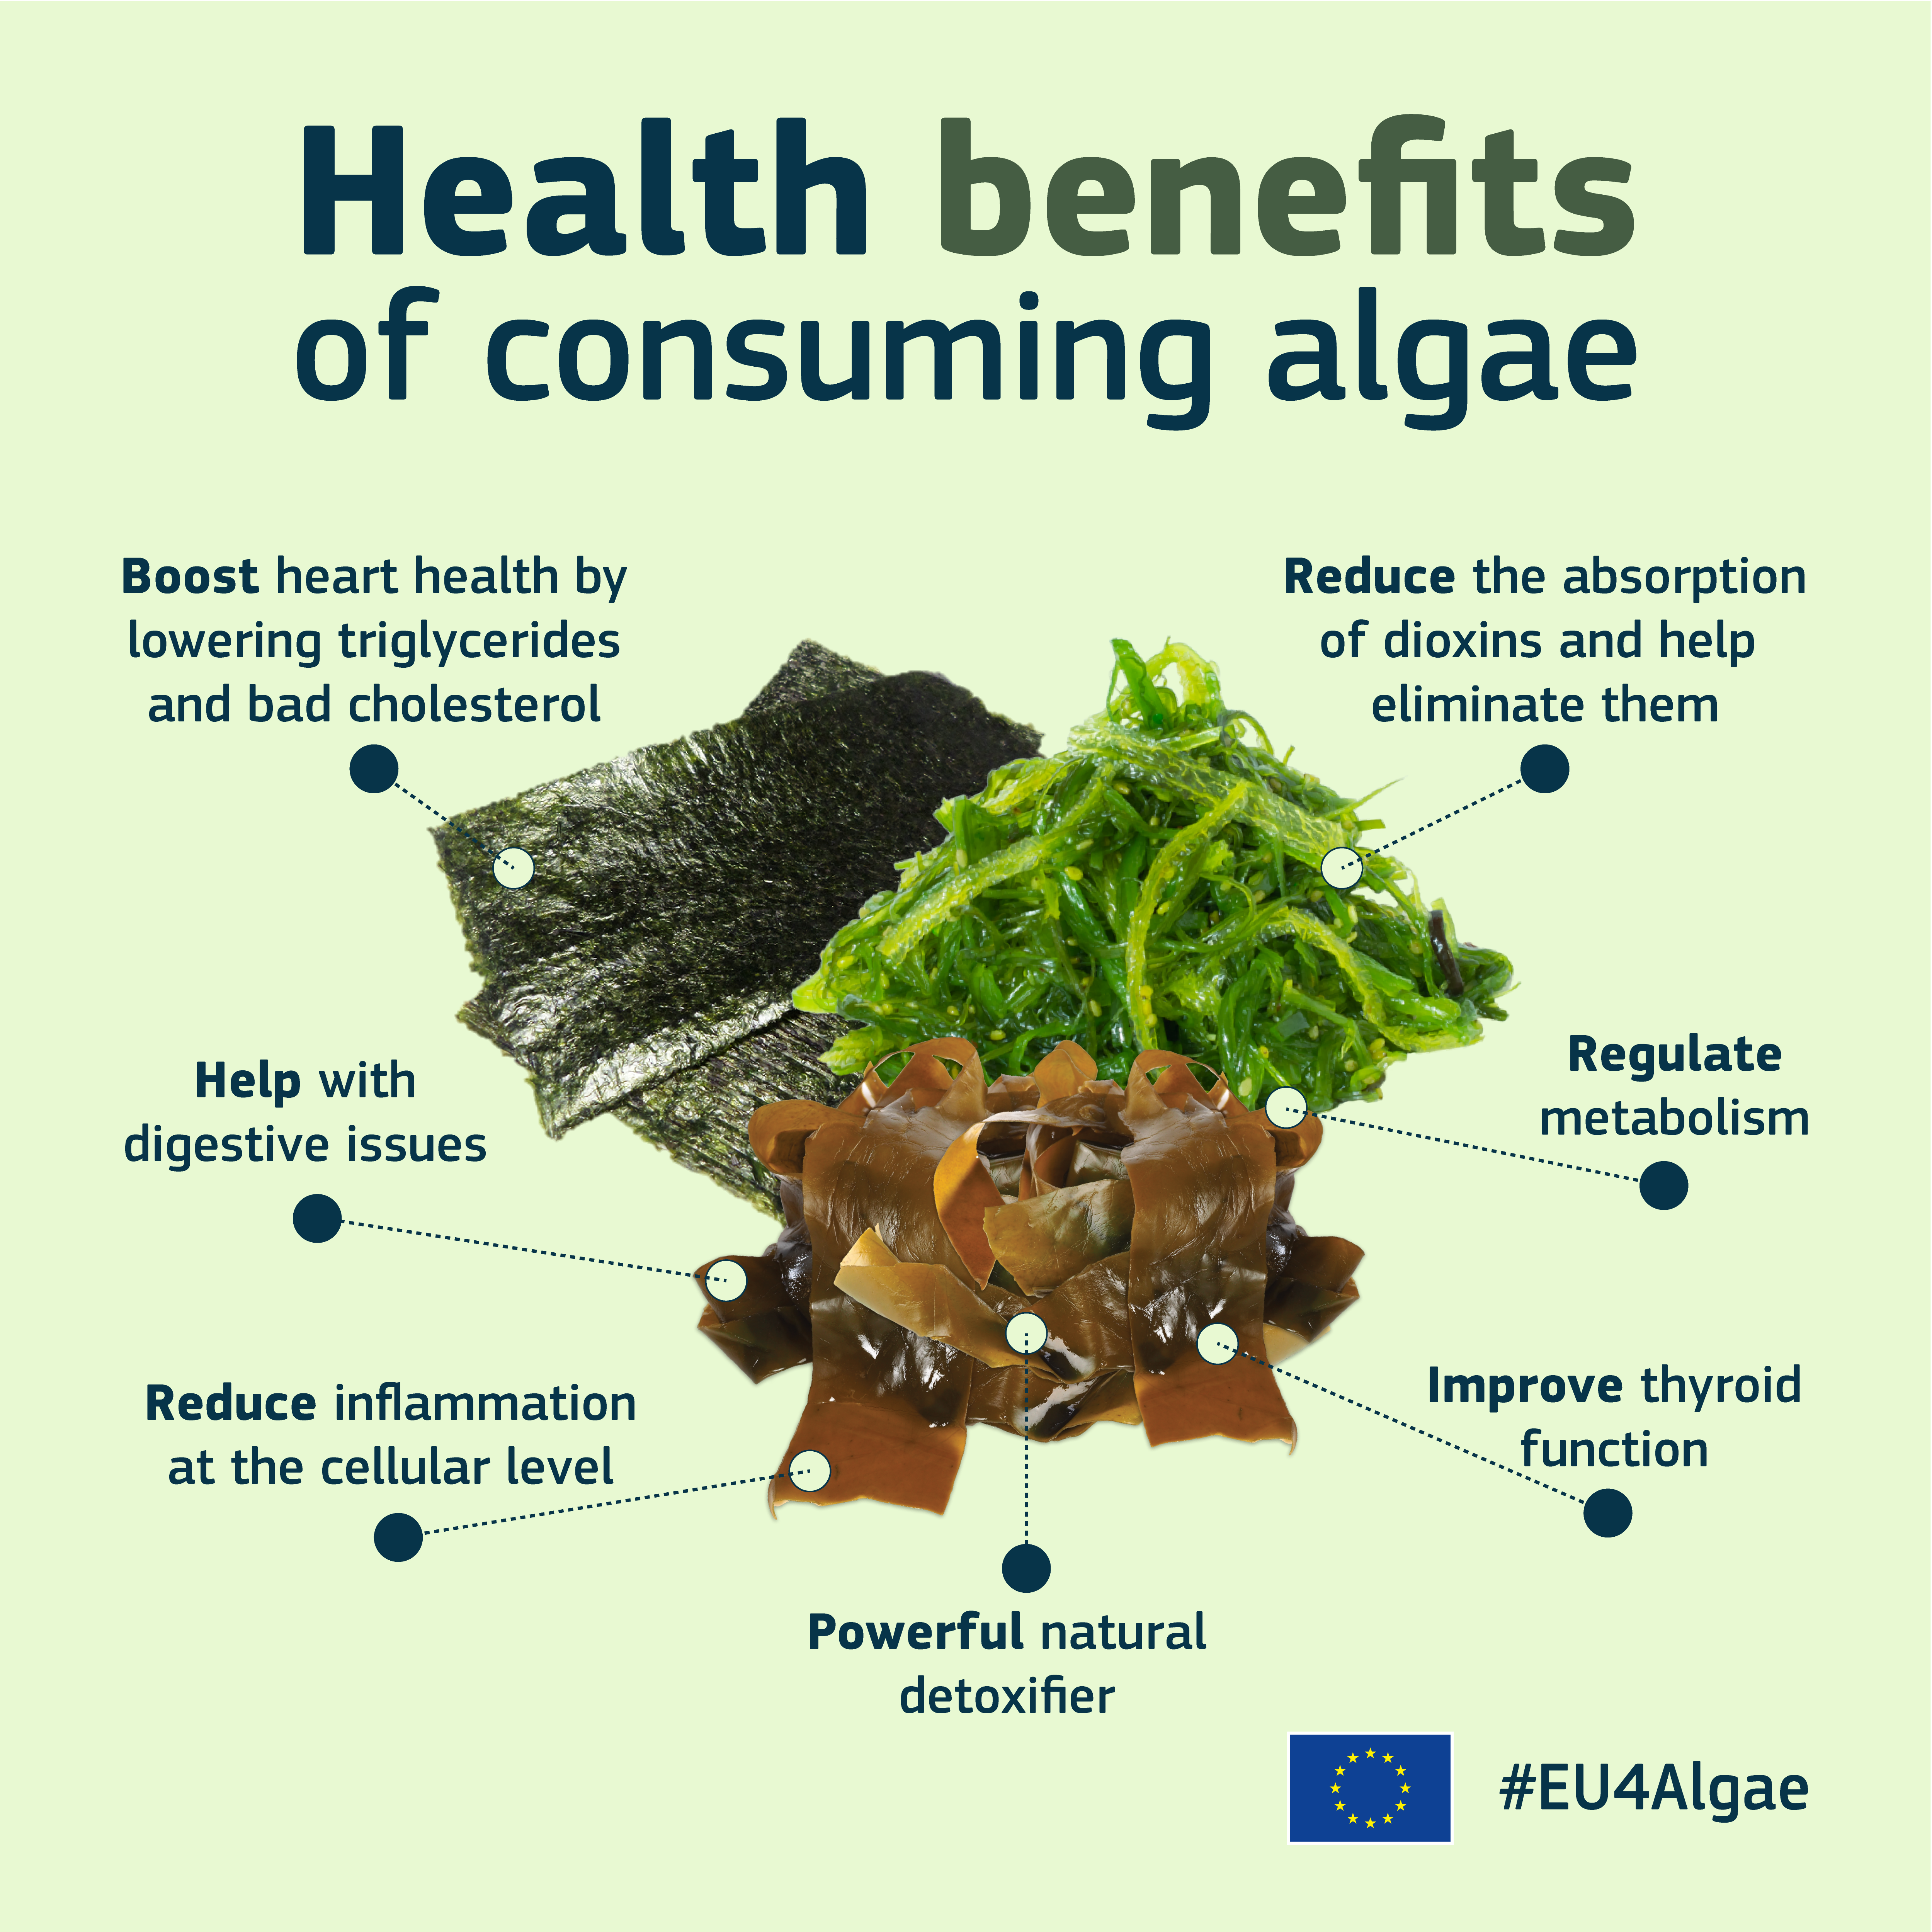 EU4Algae_consumers_campaign_Health_benefits_of_consuming_algae_LjhqXXaedBX9DYtsdVRTHTLehgw_106113.png